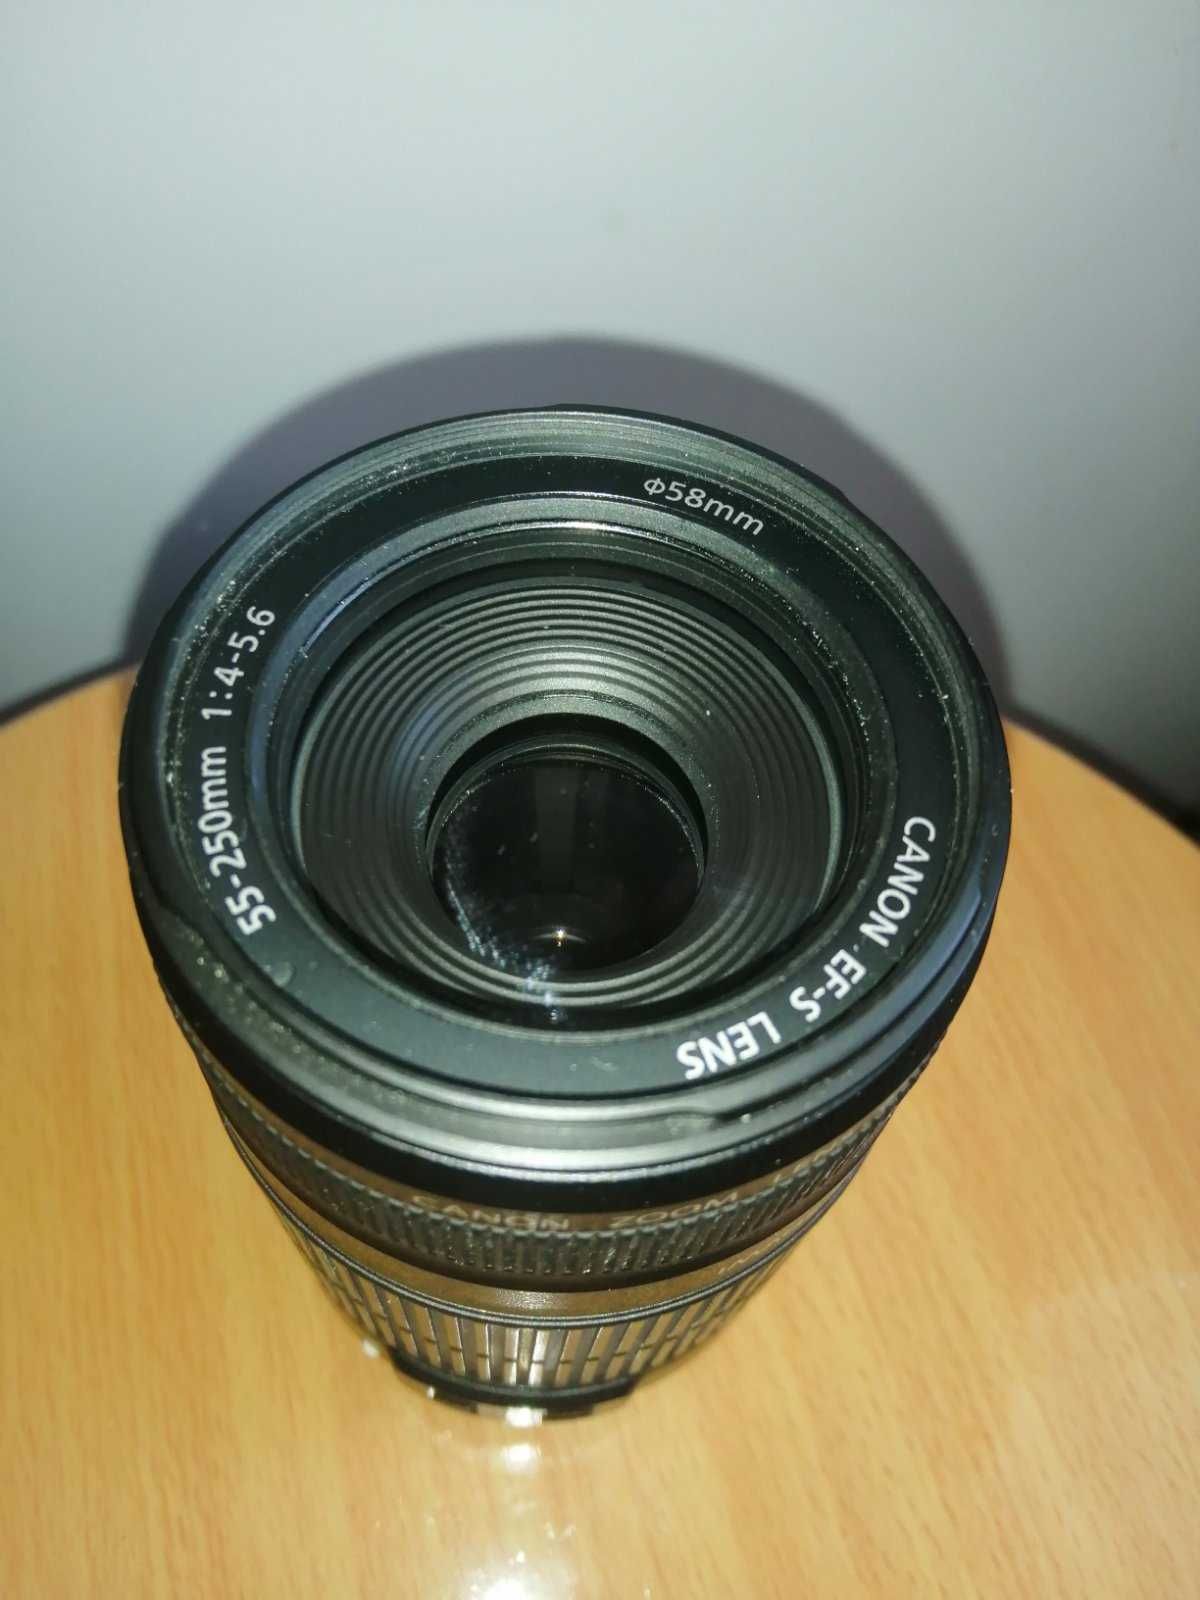 Продам обьектив Canon efs 55-250mm, 1.1m/3.6ft macro